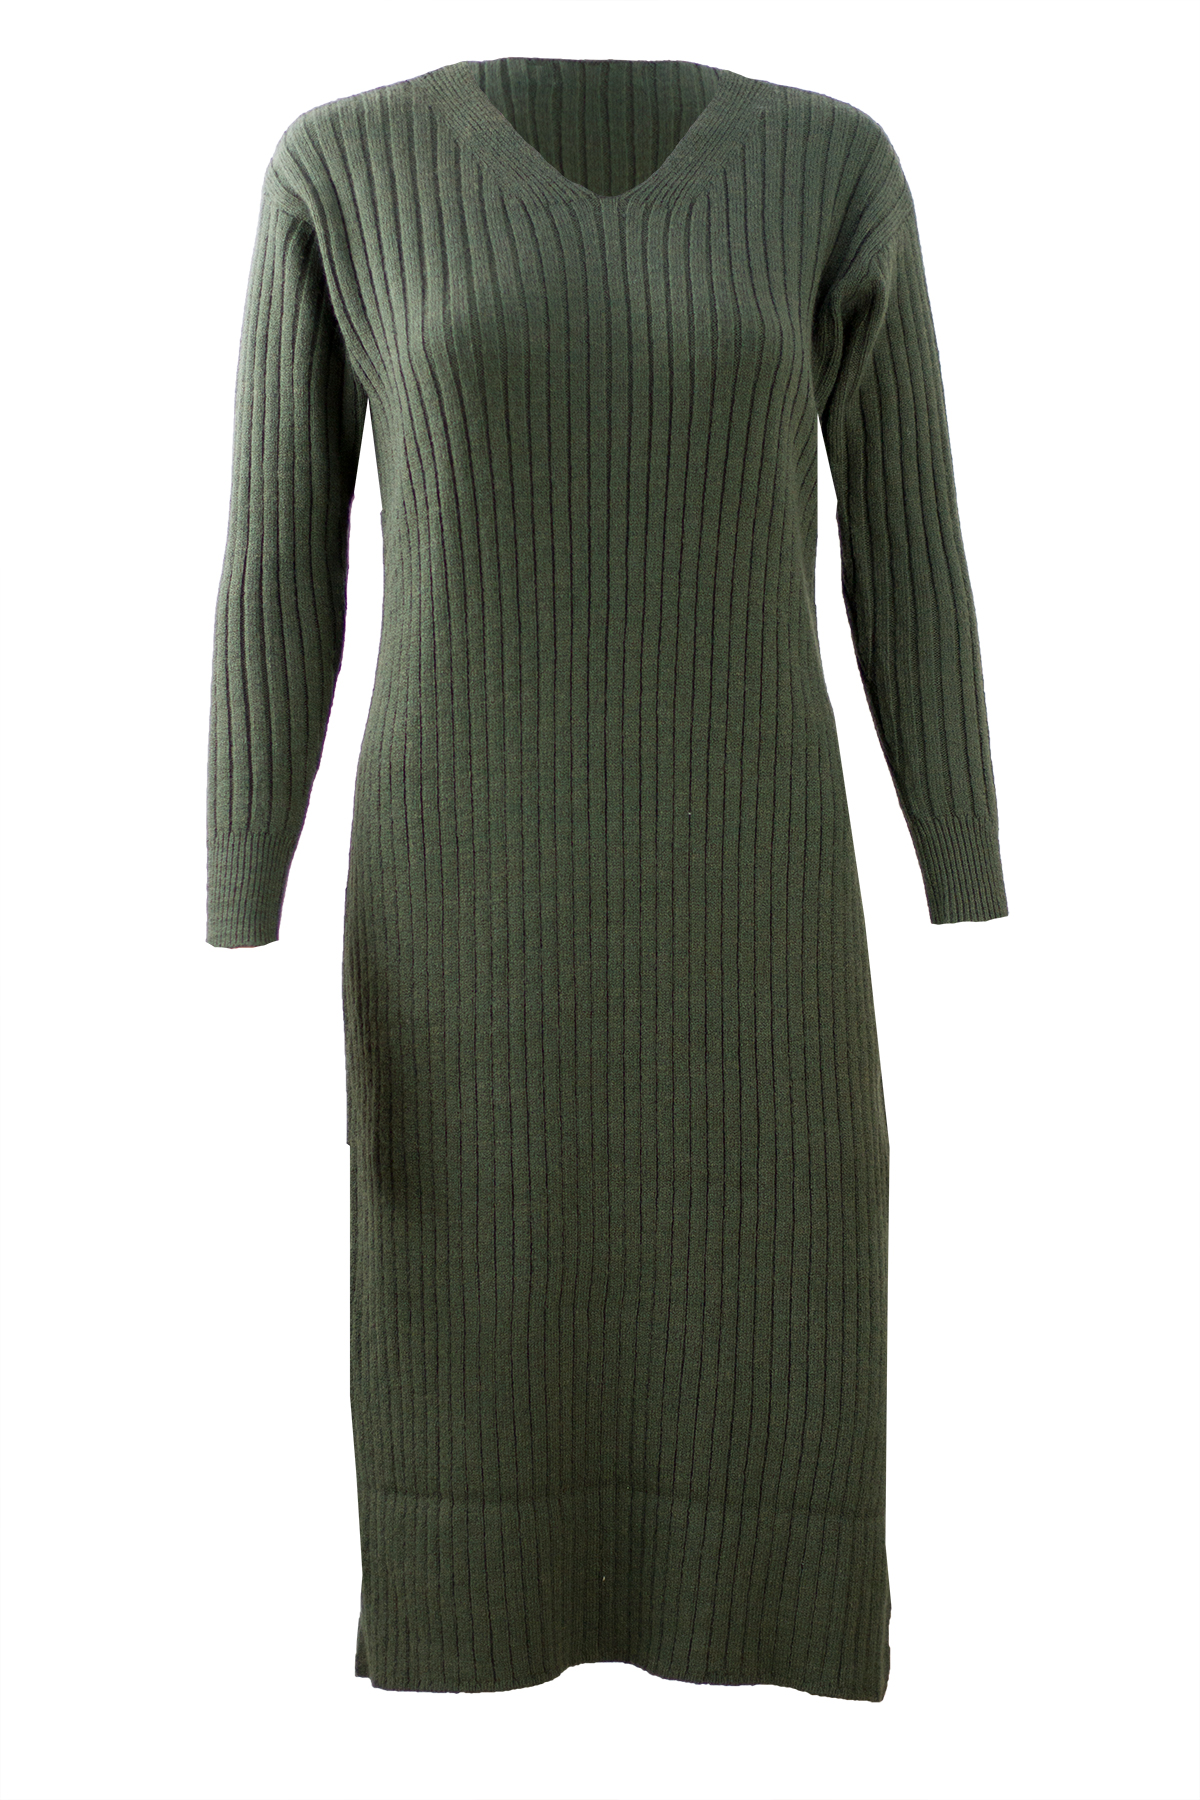 2020 New Tweed Dress Women Spring Vintage Wool Plaid Dresses Female Elegant Woolen  Dress Ladies Office | Wish